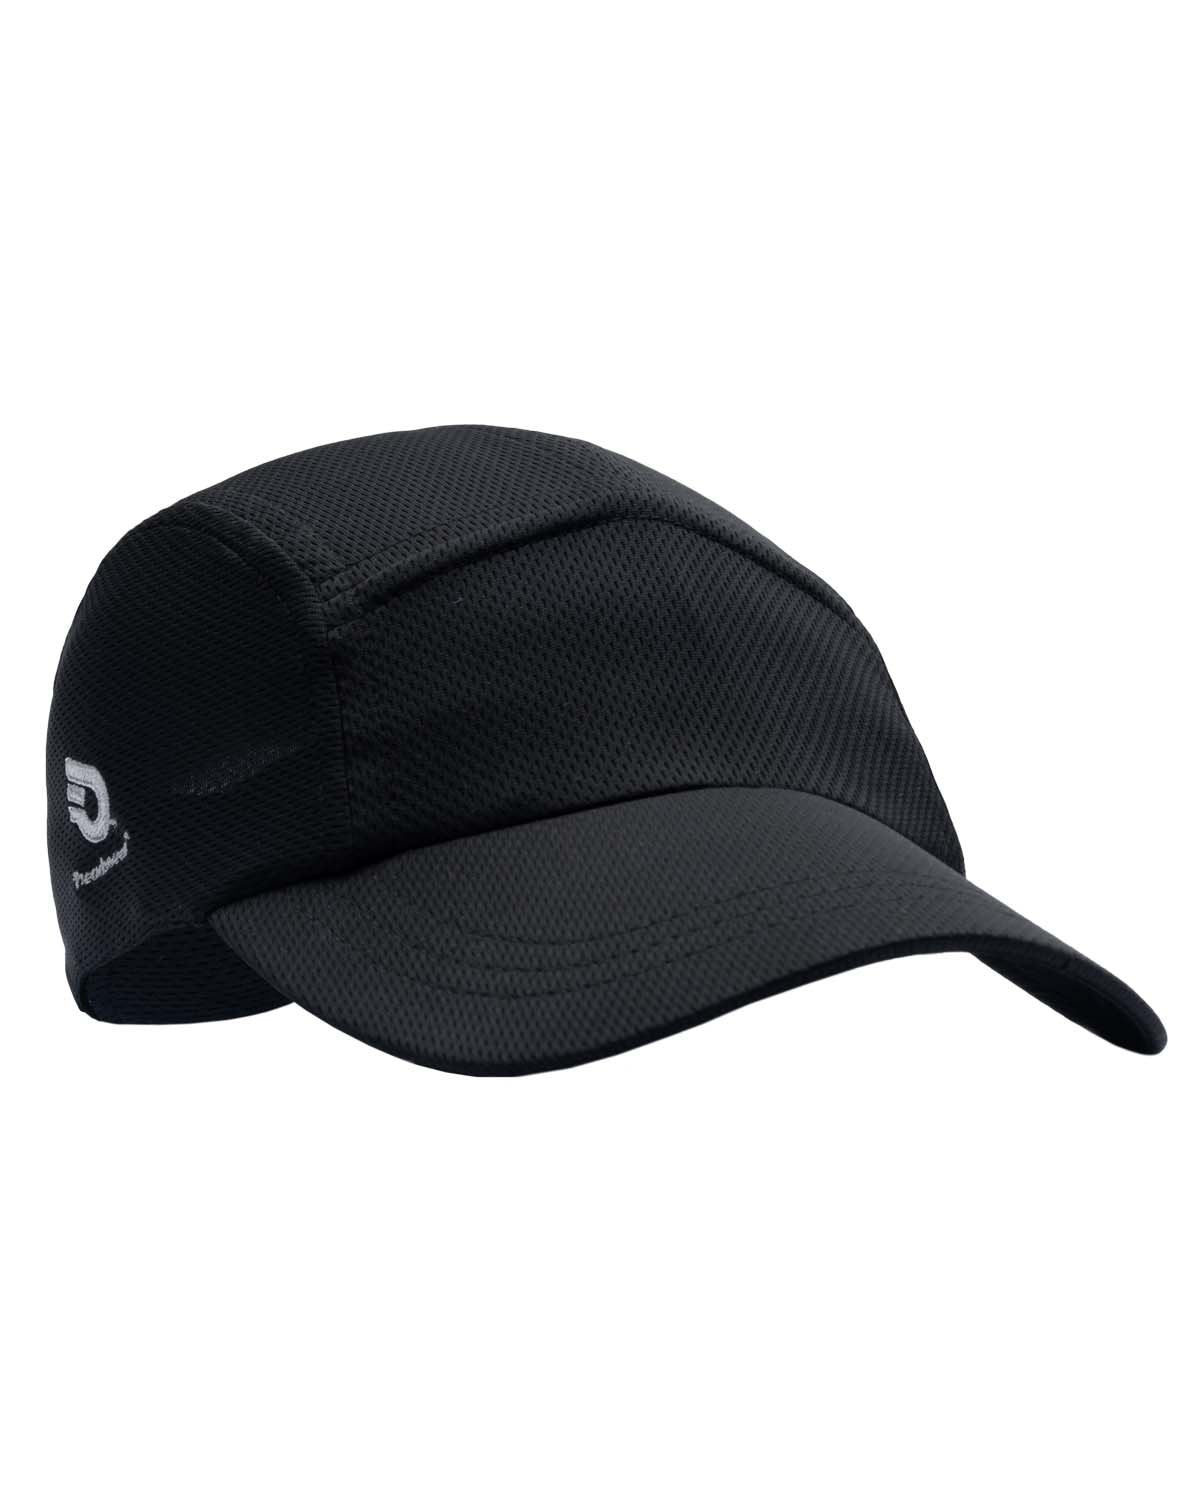 Headsweats - Adult Race Hat